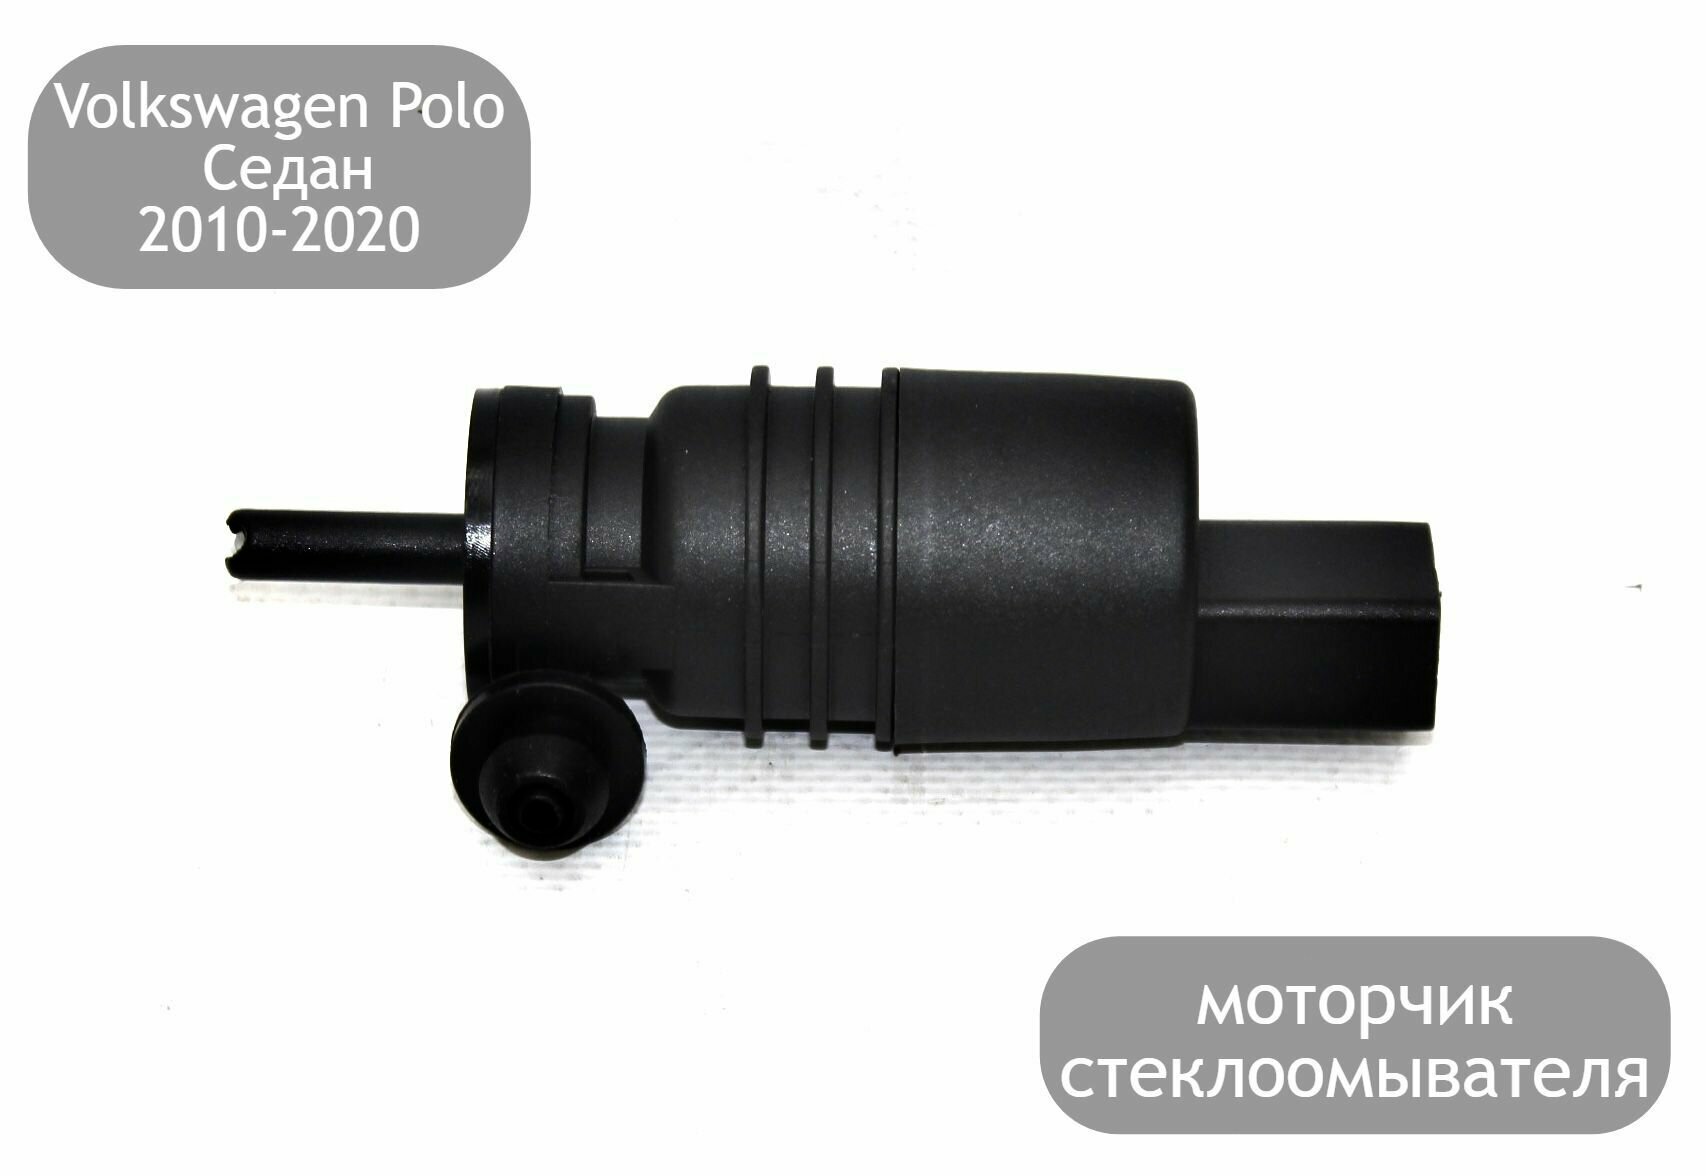 Моторчик стеклоомывателя лобового стекла для Volkswagen Polo Седан 2010-2020 (дорестайлинг и рестайлинг)